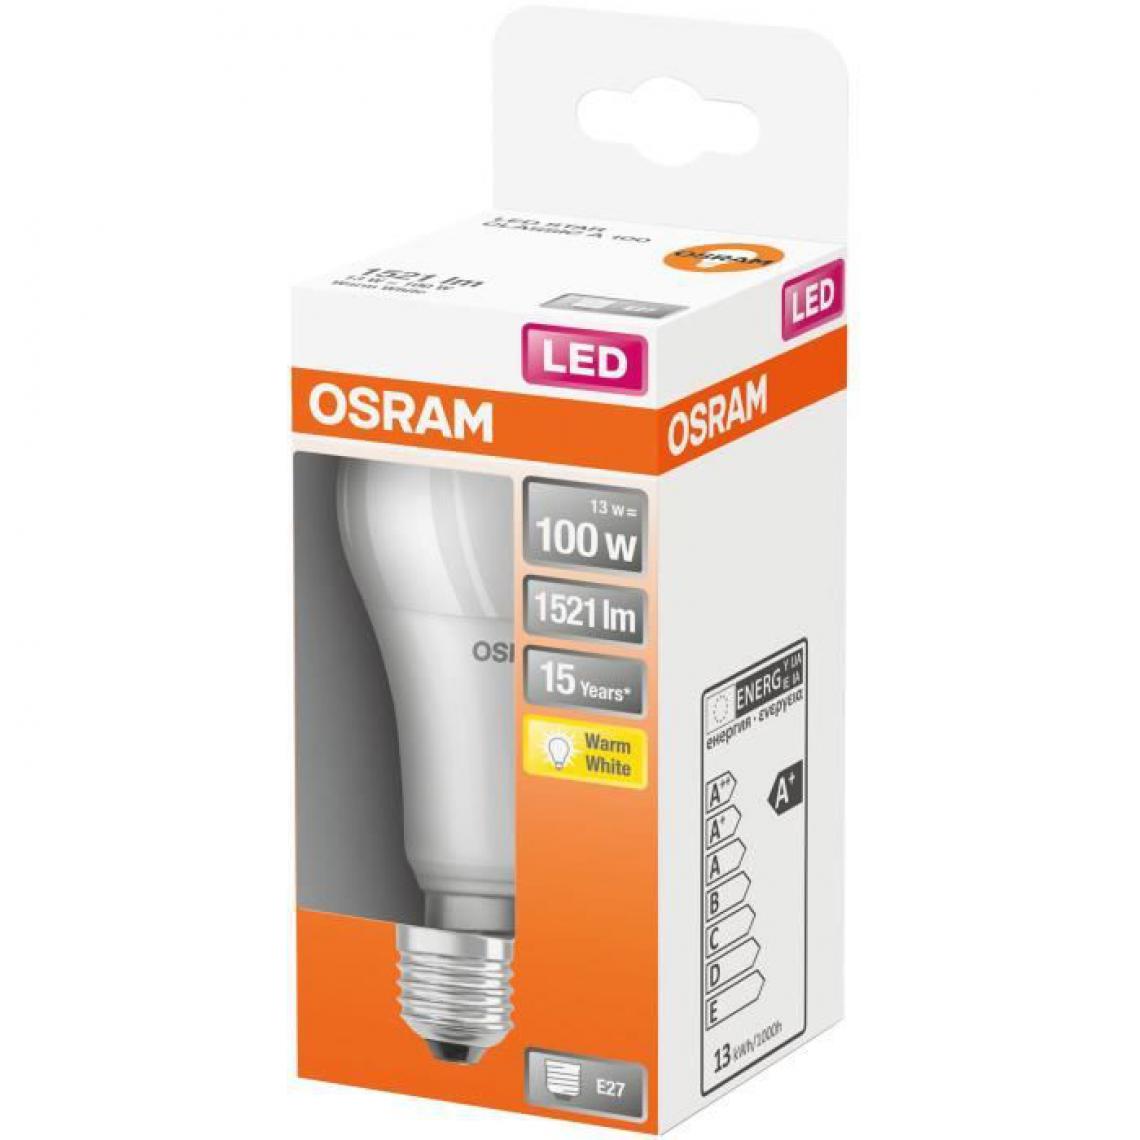 Barritos - OSRAM LED standard dépolie radiateur 13W E27 1521lm 2700K chaud - Boite de 1 - Ampoules LED